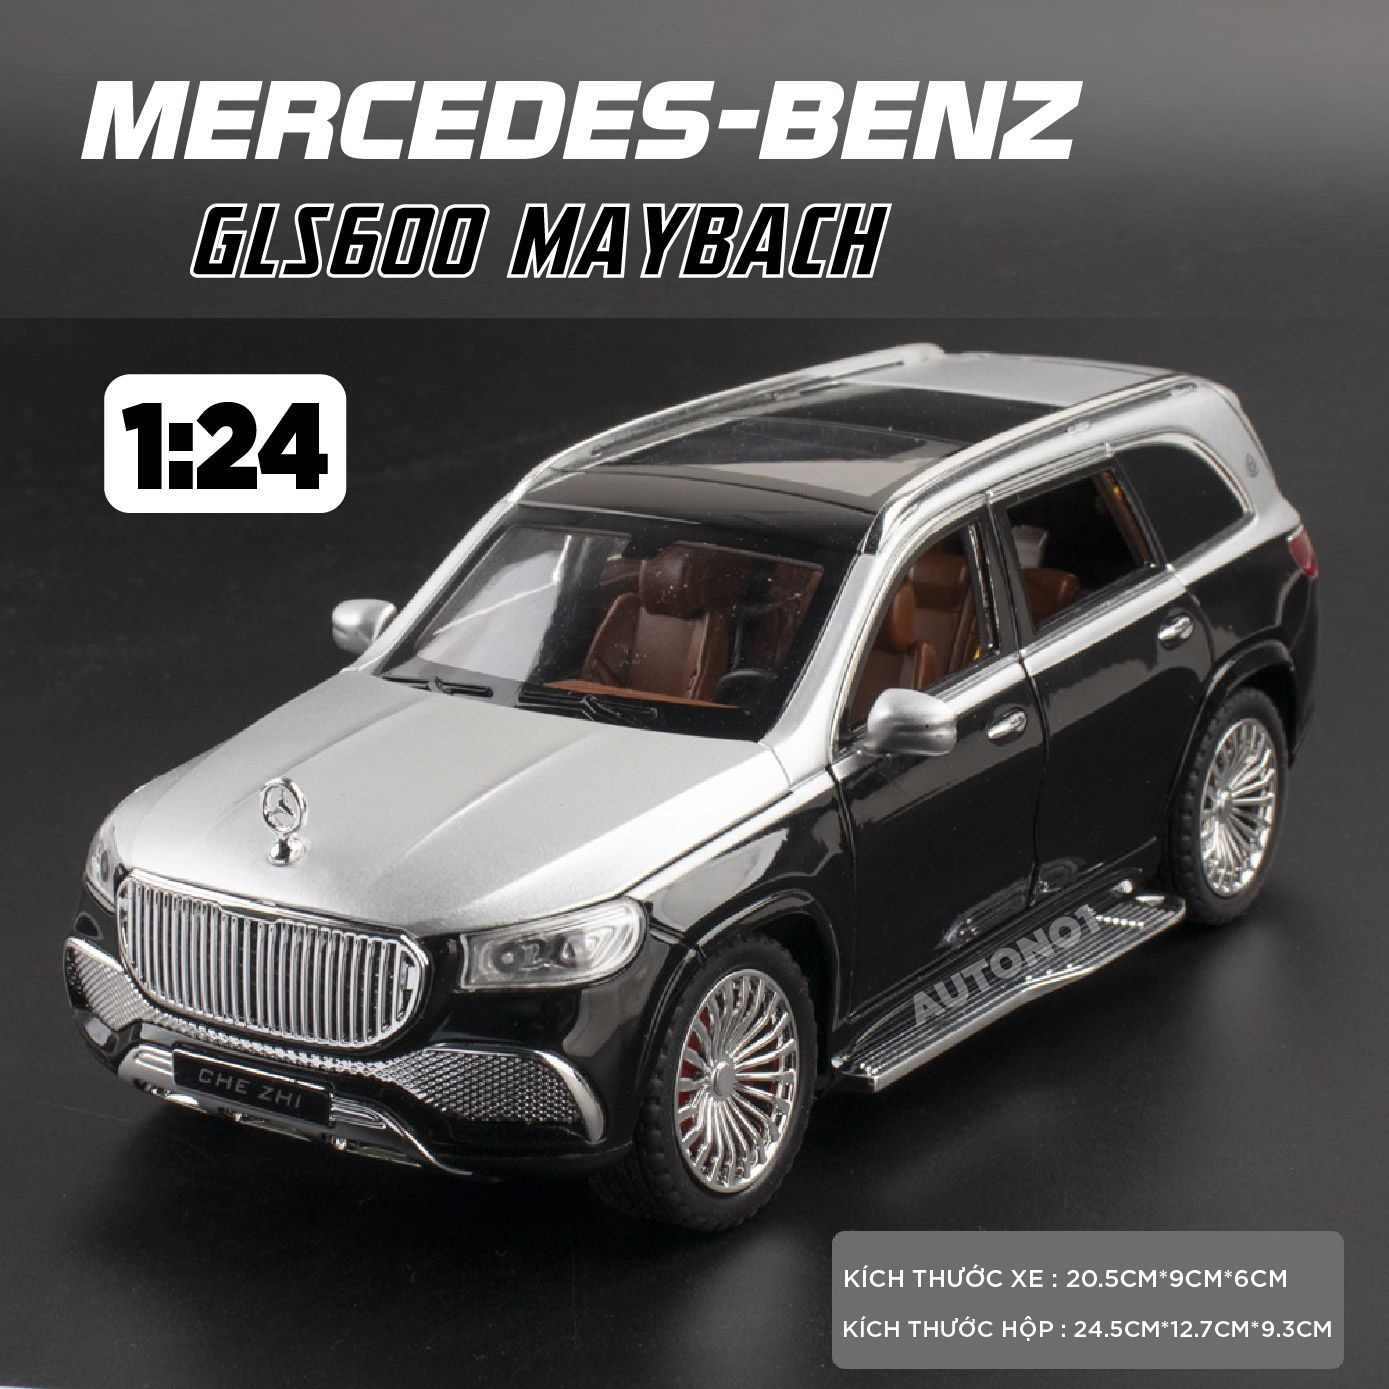  Mô hình xe Mercedes-Benz GLS600 MayBach full open có đèn có âm thanh bầu trời sao tỉ lệ 1:24 Chezhi OT437 